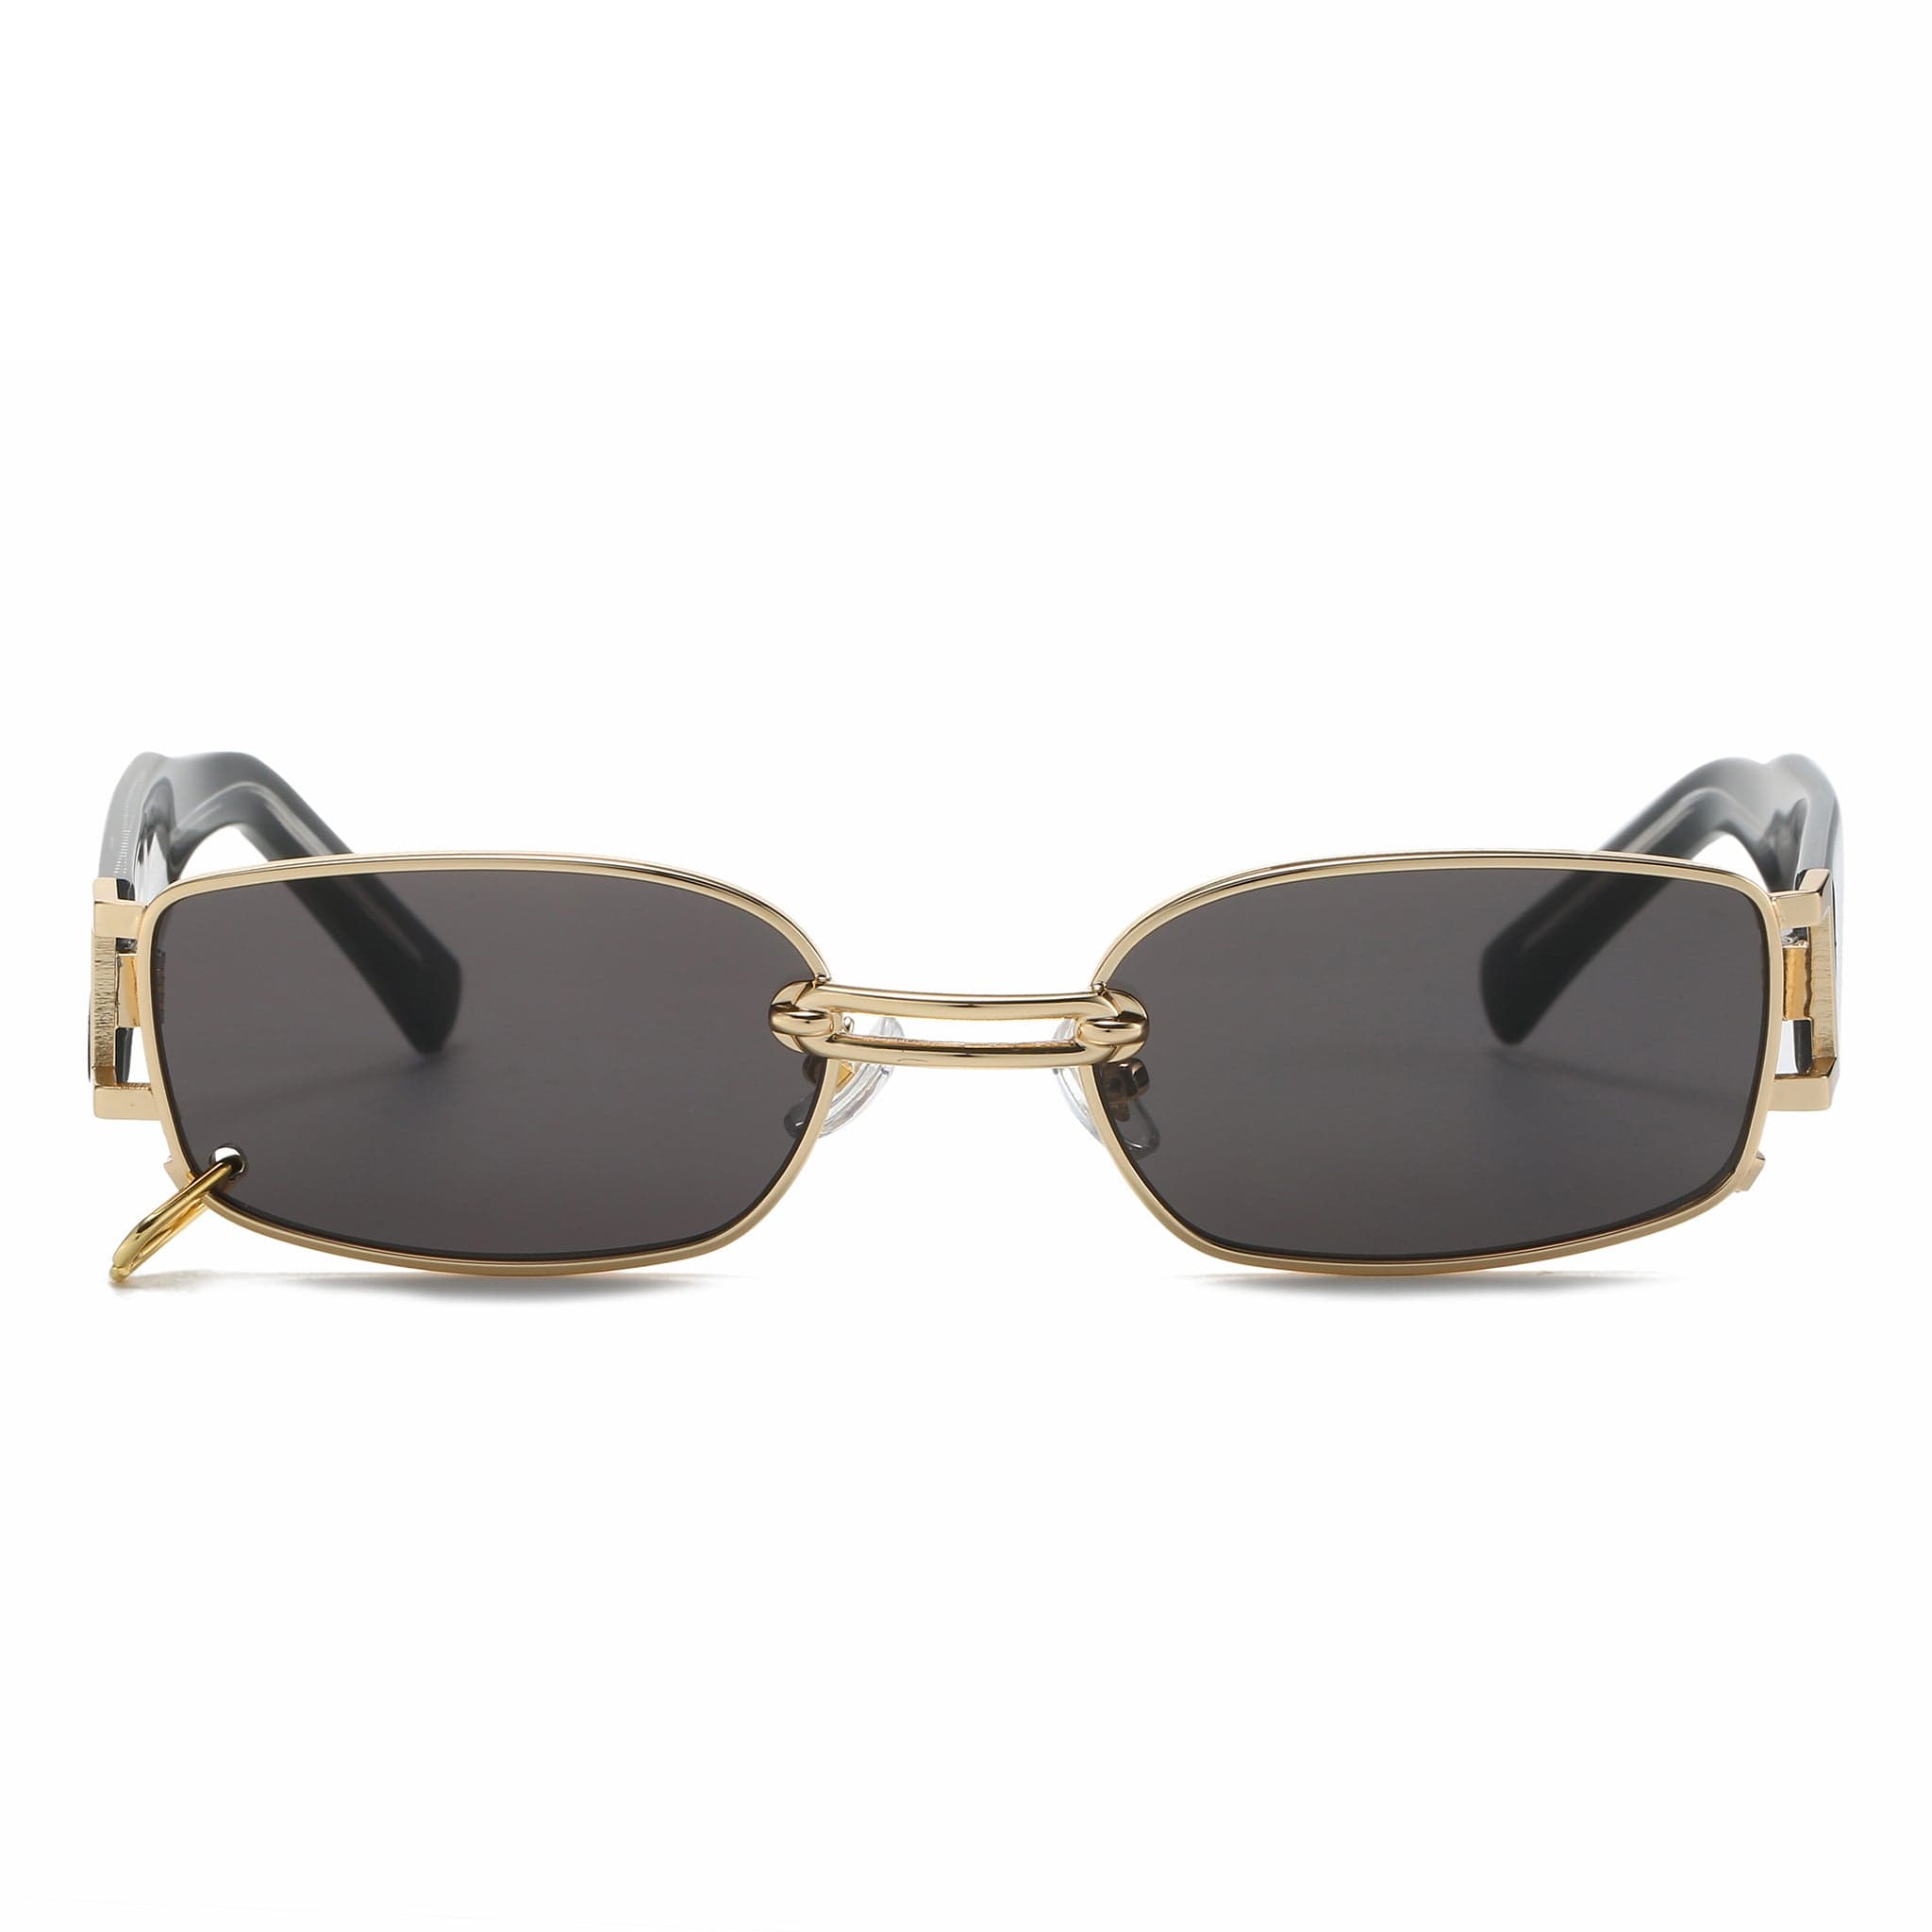 GIUSTIZIERI VECCHI Sunglasses Medium / Black with Gold Celestial Shield Uno